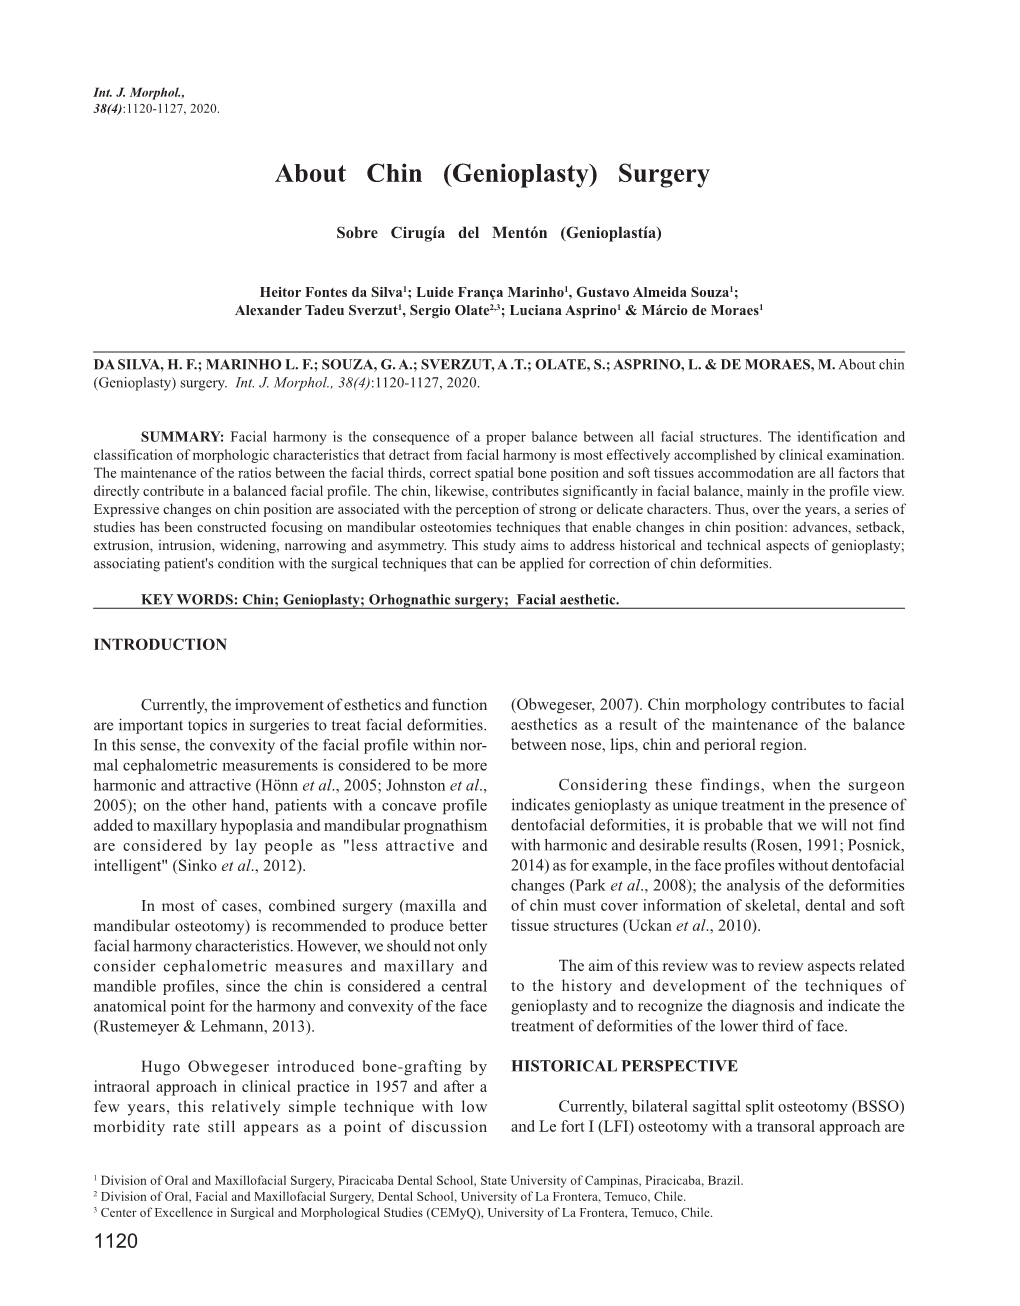 About Chin (Genioplasty) Surgery